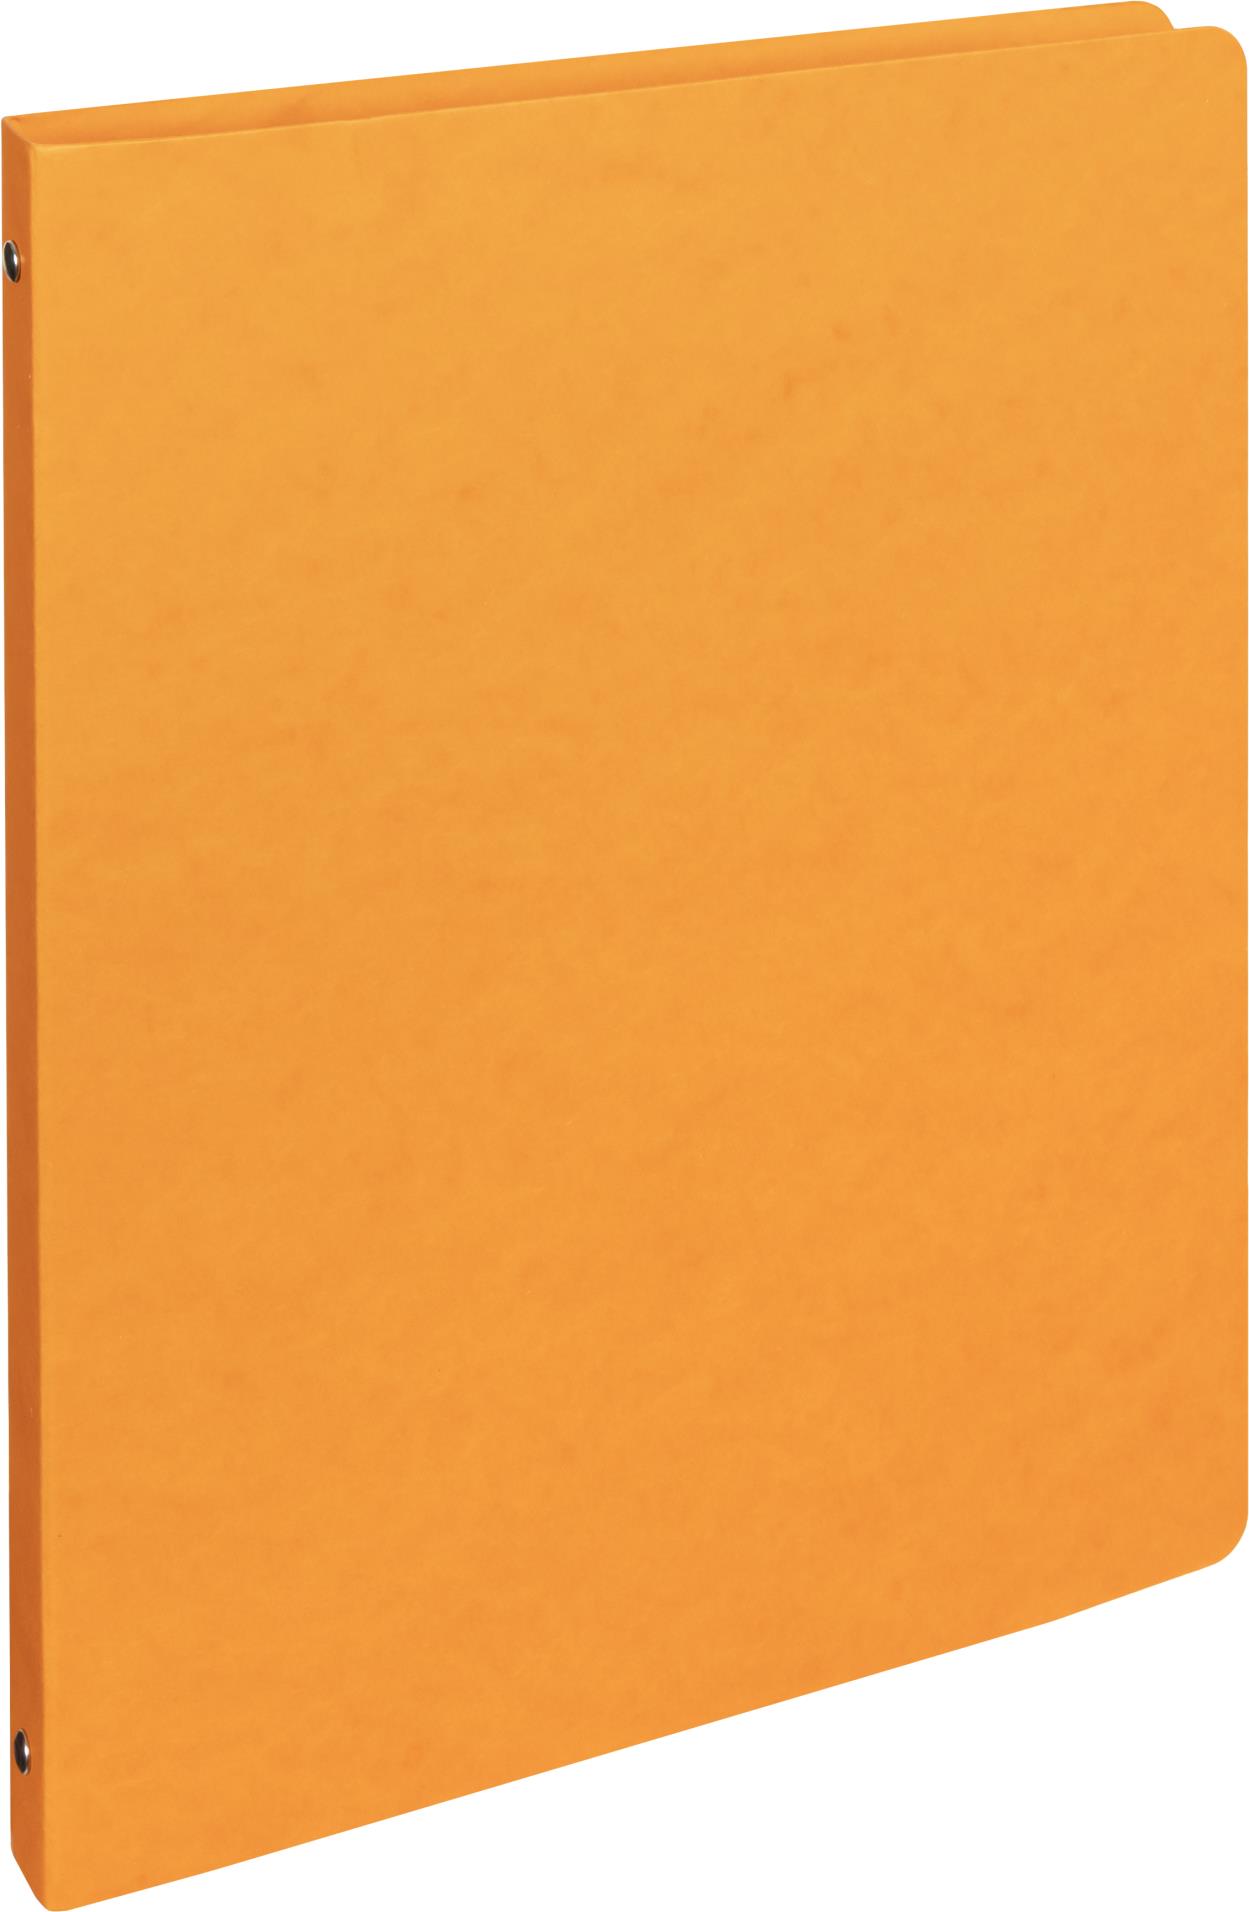 Karton P+P Pořadač čtyřkroužkový prešpánový A4 2 cm, oranžový